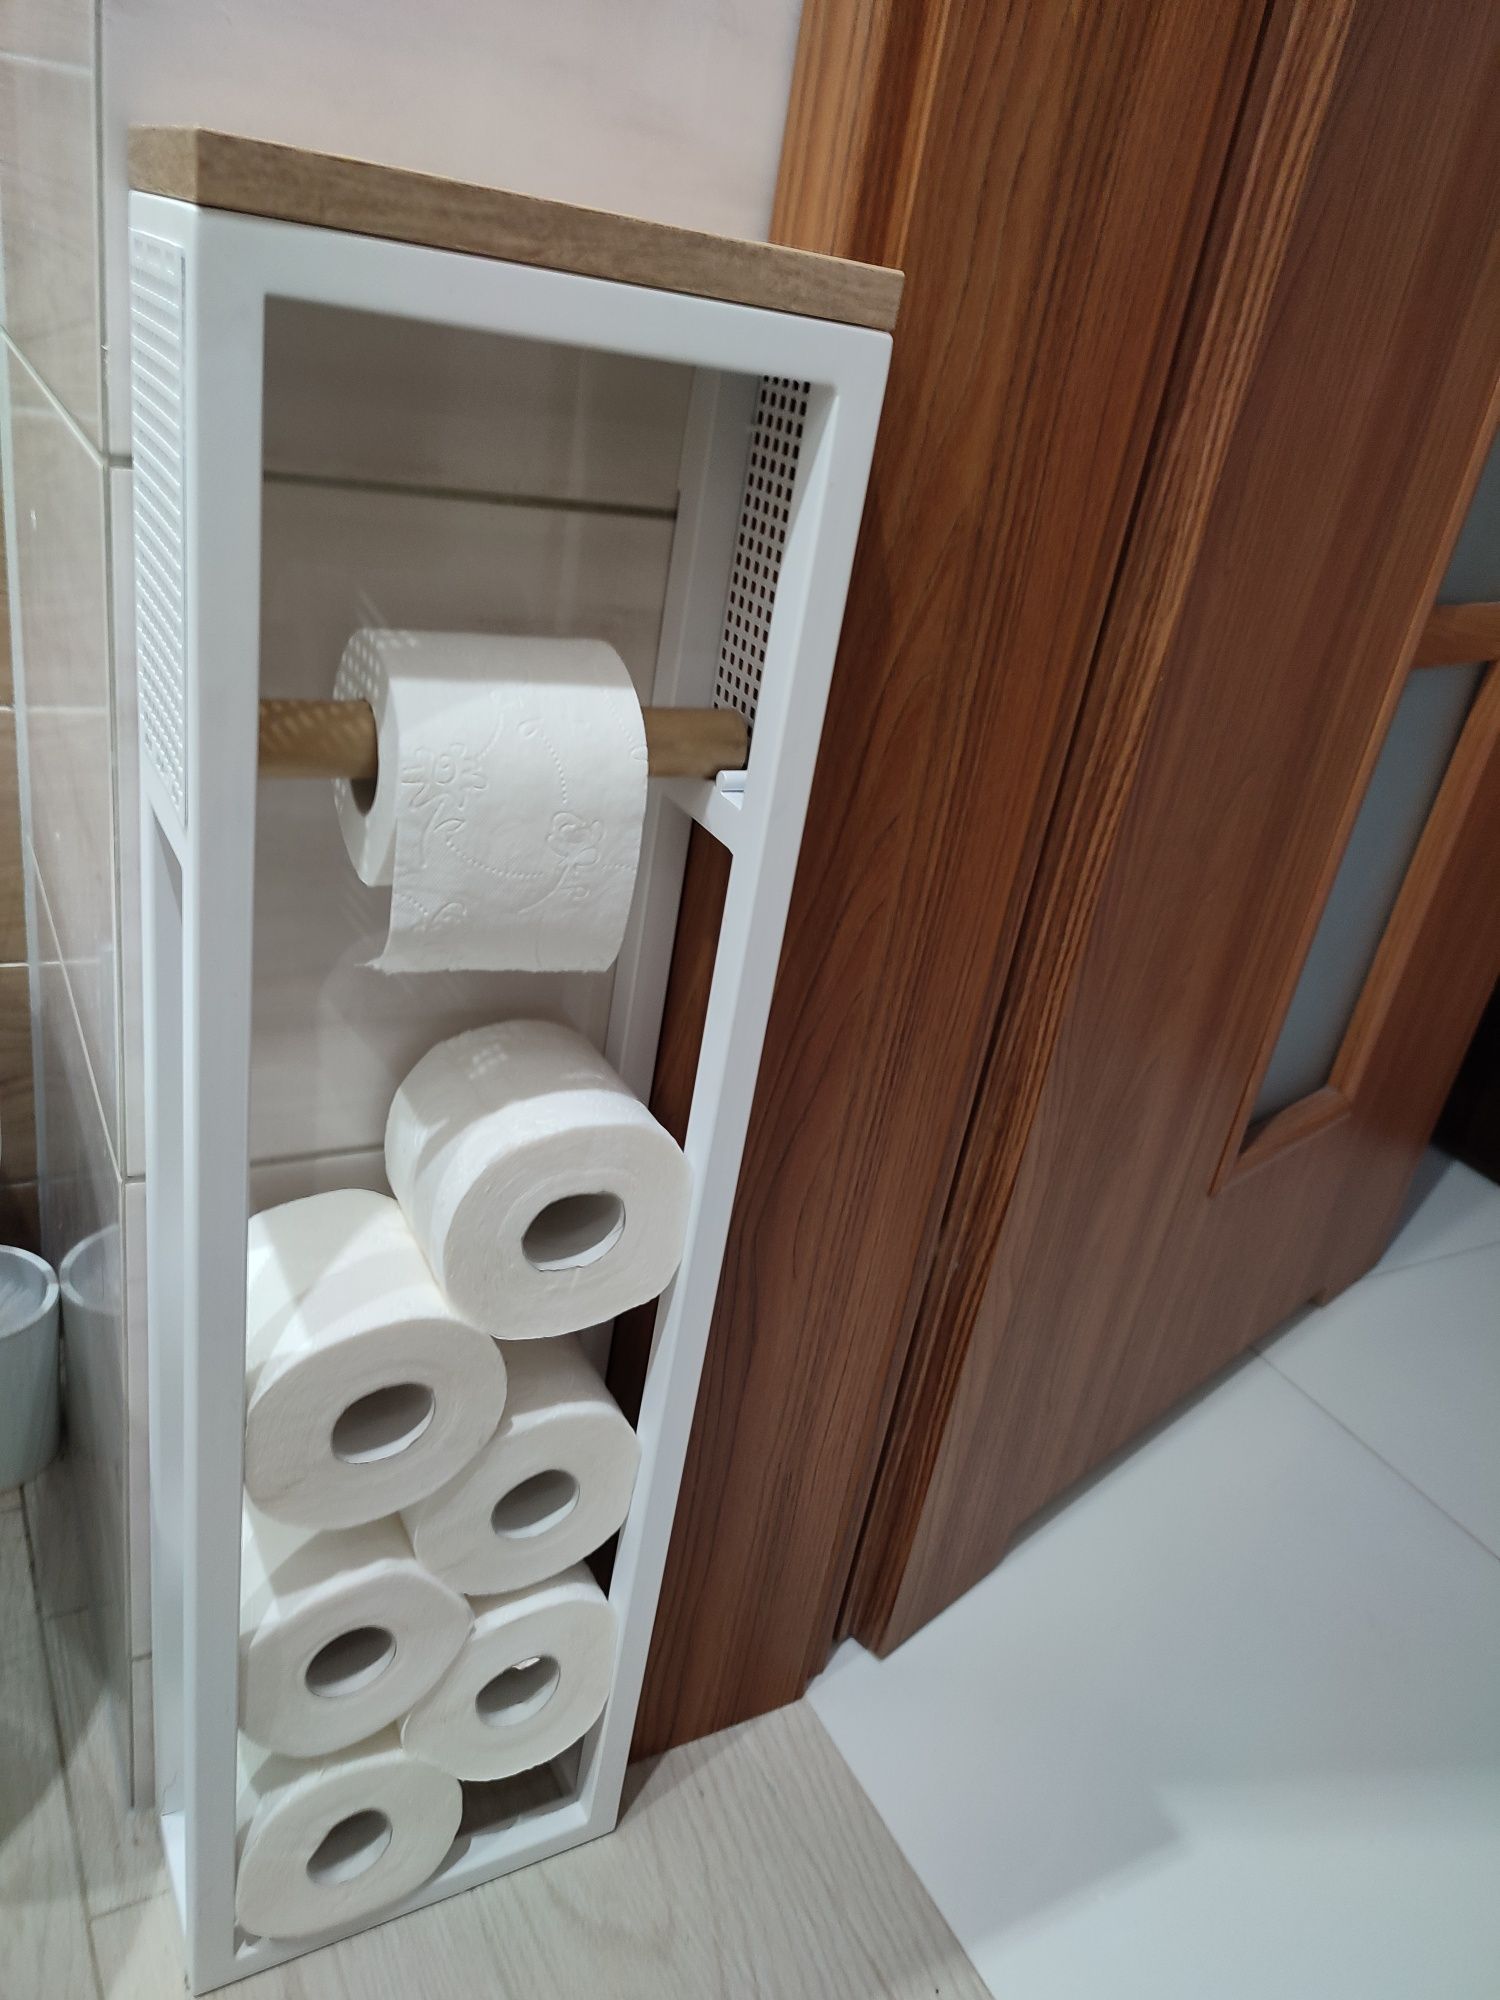 Stojak na papier toaletowy w stylu loftowym